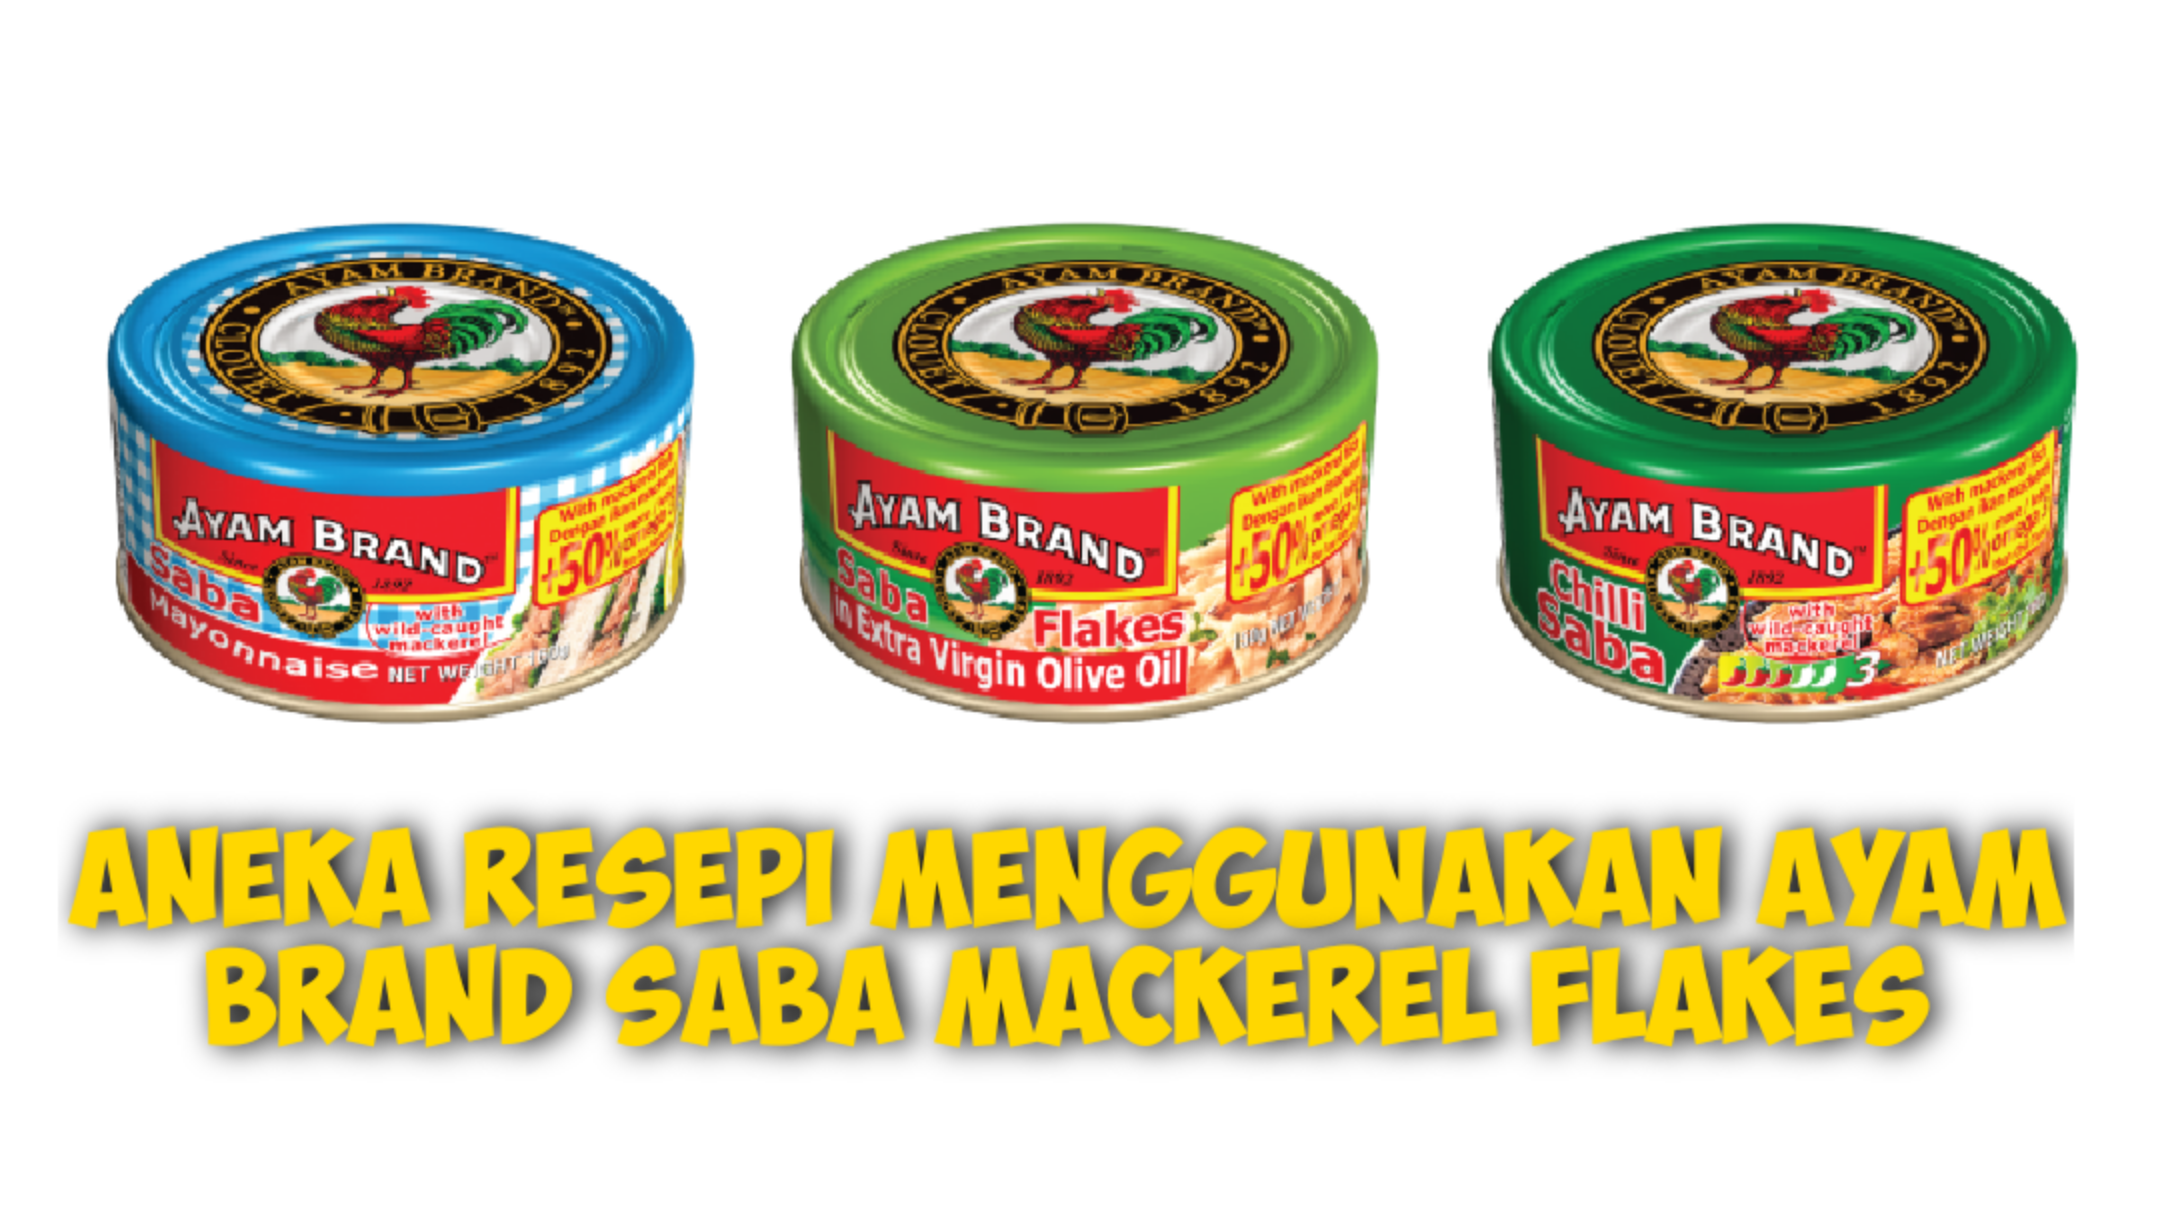 Aneka Resepi Menggunakan Ayam Brand Saba Mackerel Flakes